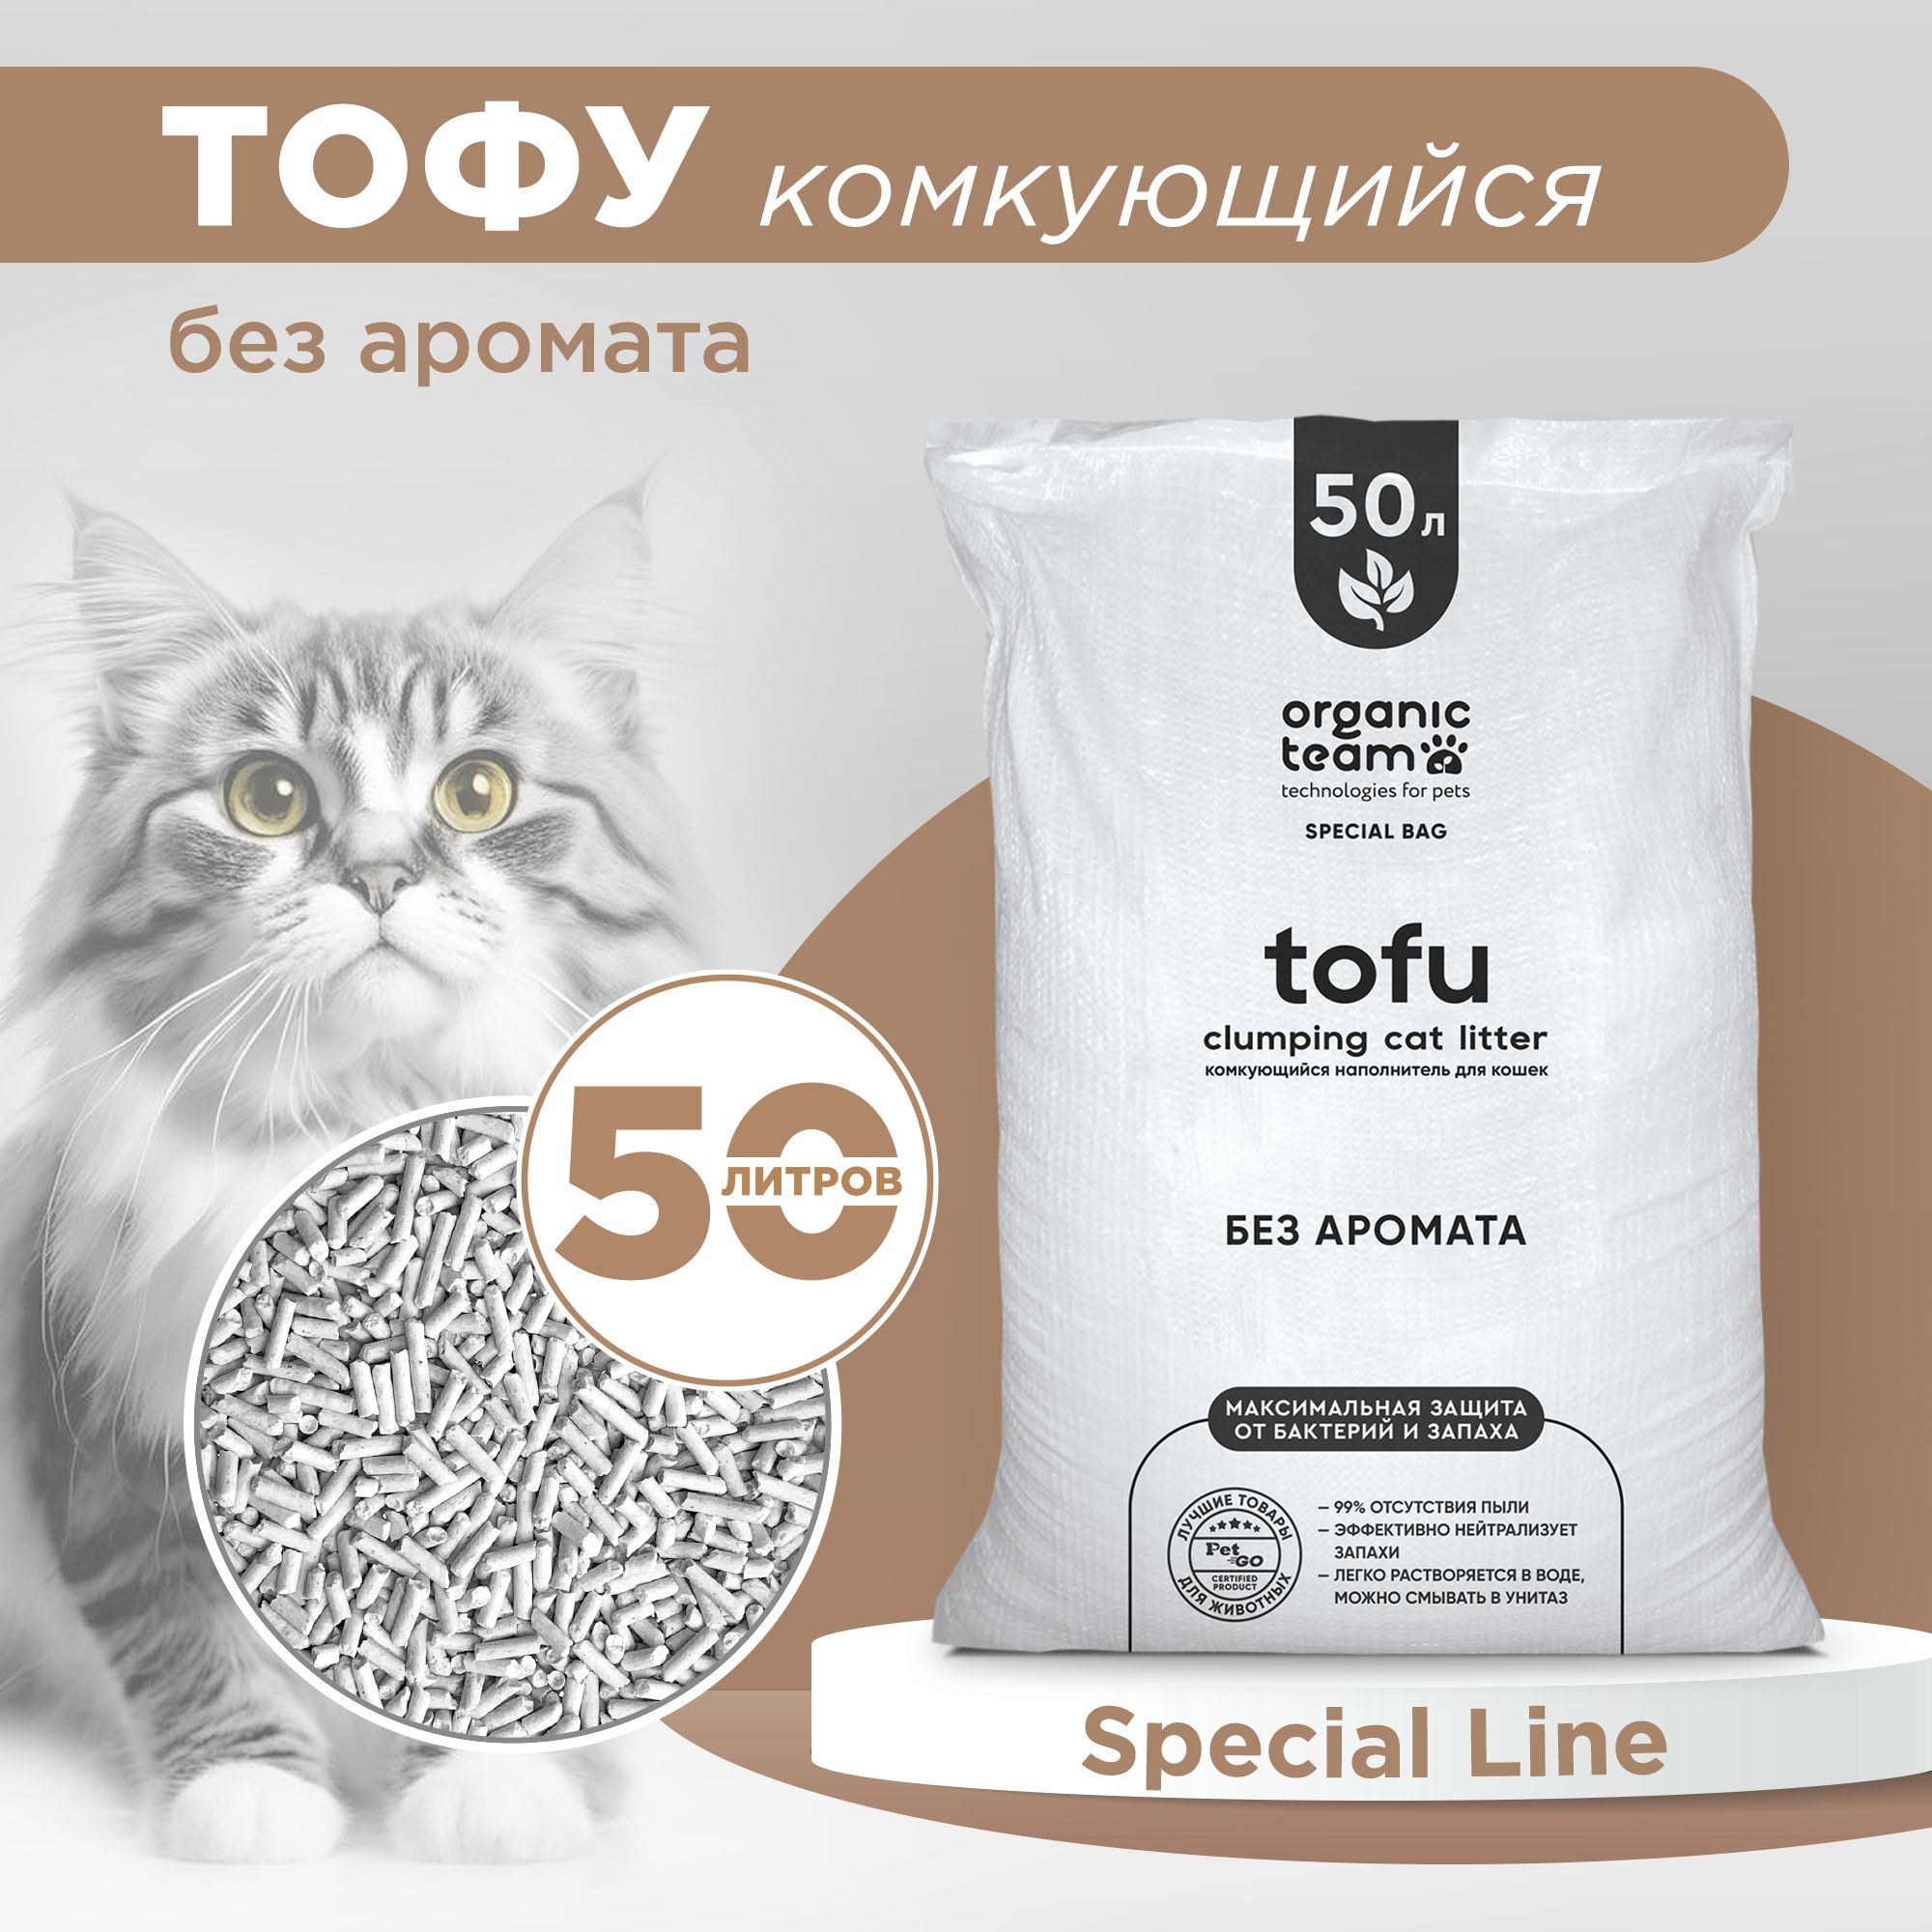 Наполнитель для кошек Organic team, тофу, комкующийся, без аромата, 20 кг